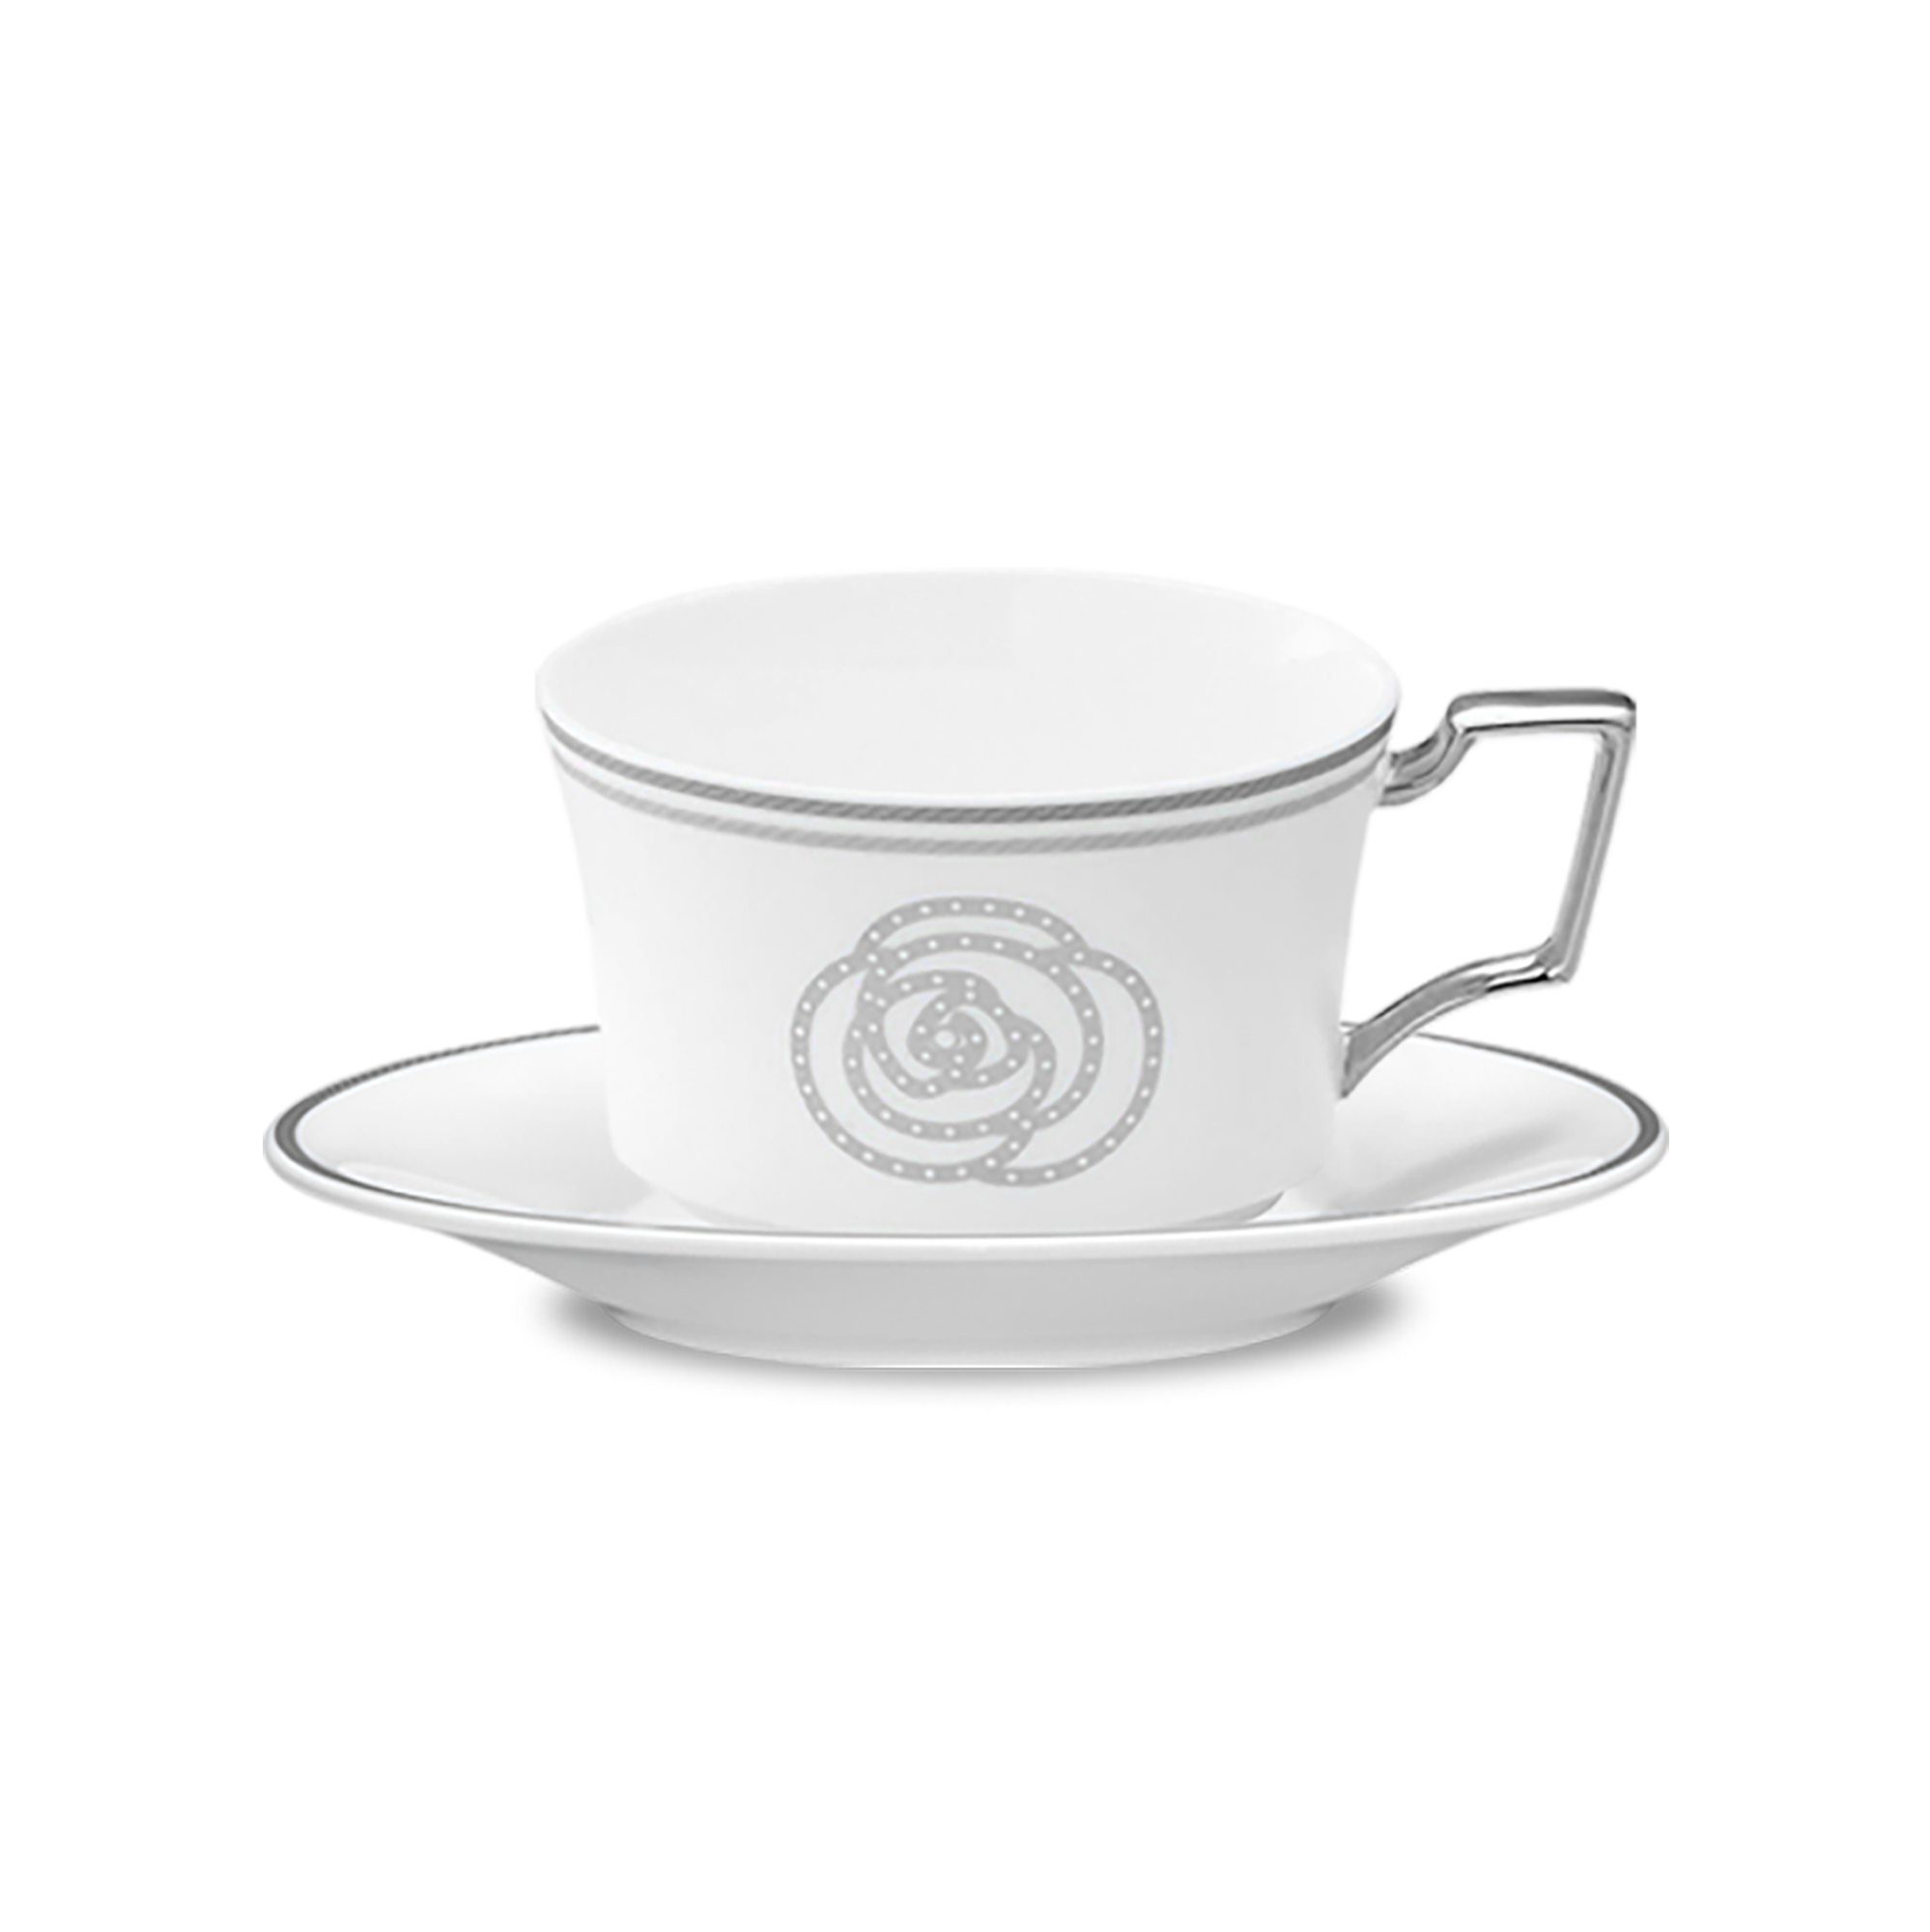  Chén trà (đặc biệt - trắng) 240ml kèm đĩa lót | Aidan 4867-2L-T93687 